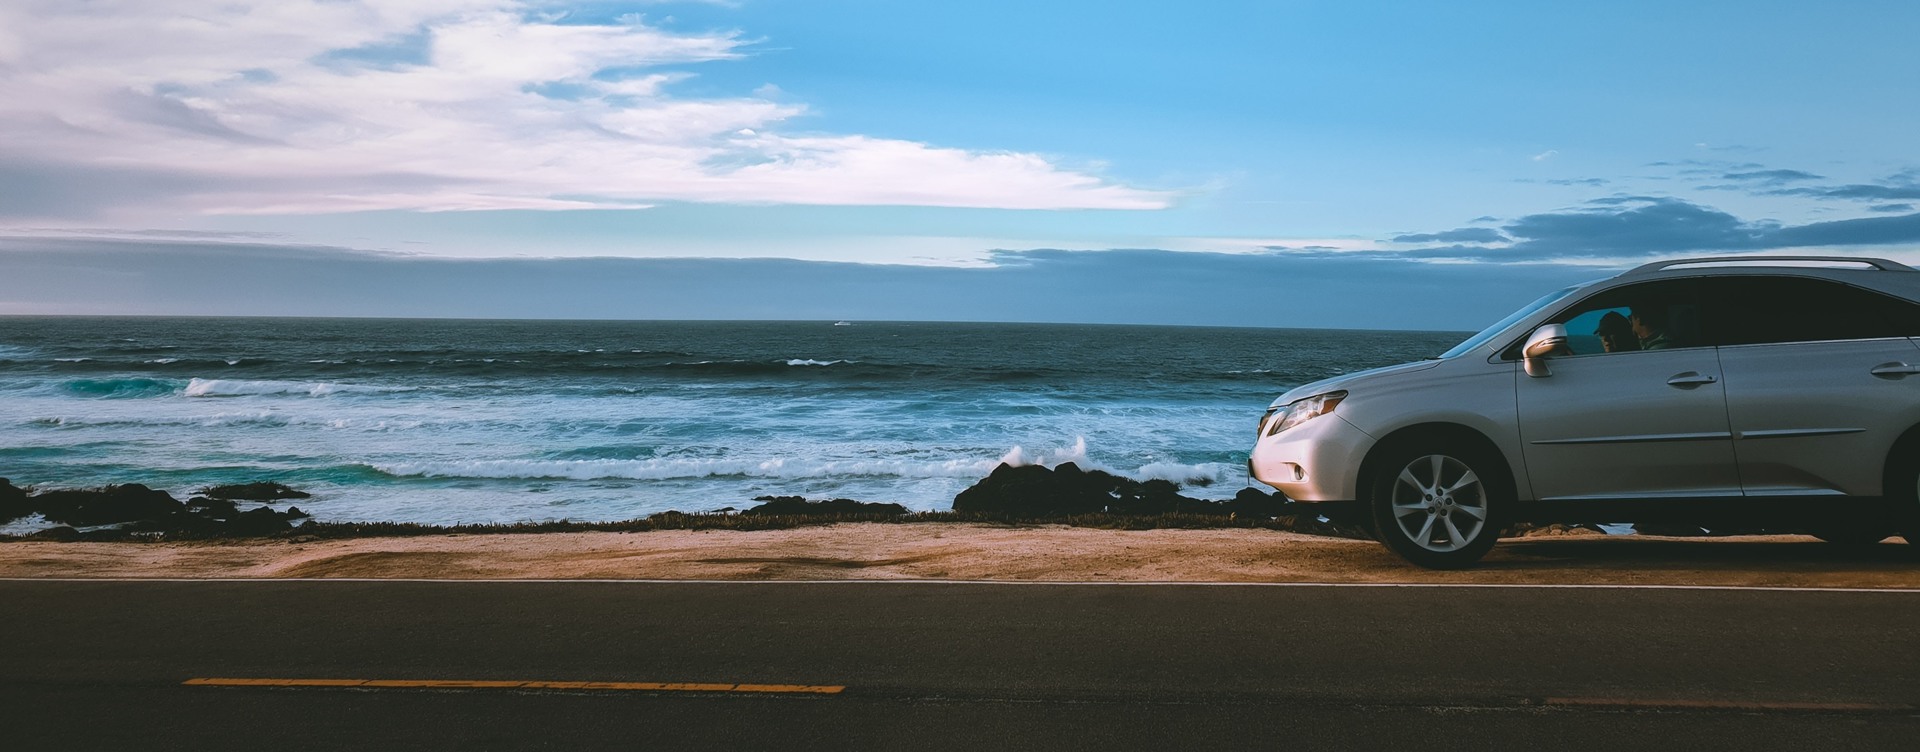 Seien Sie in Ihrem Urlaub mobil: 
Mieten Sie ein Auto und entdecken Sie die schöne Costa Blanca